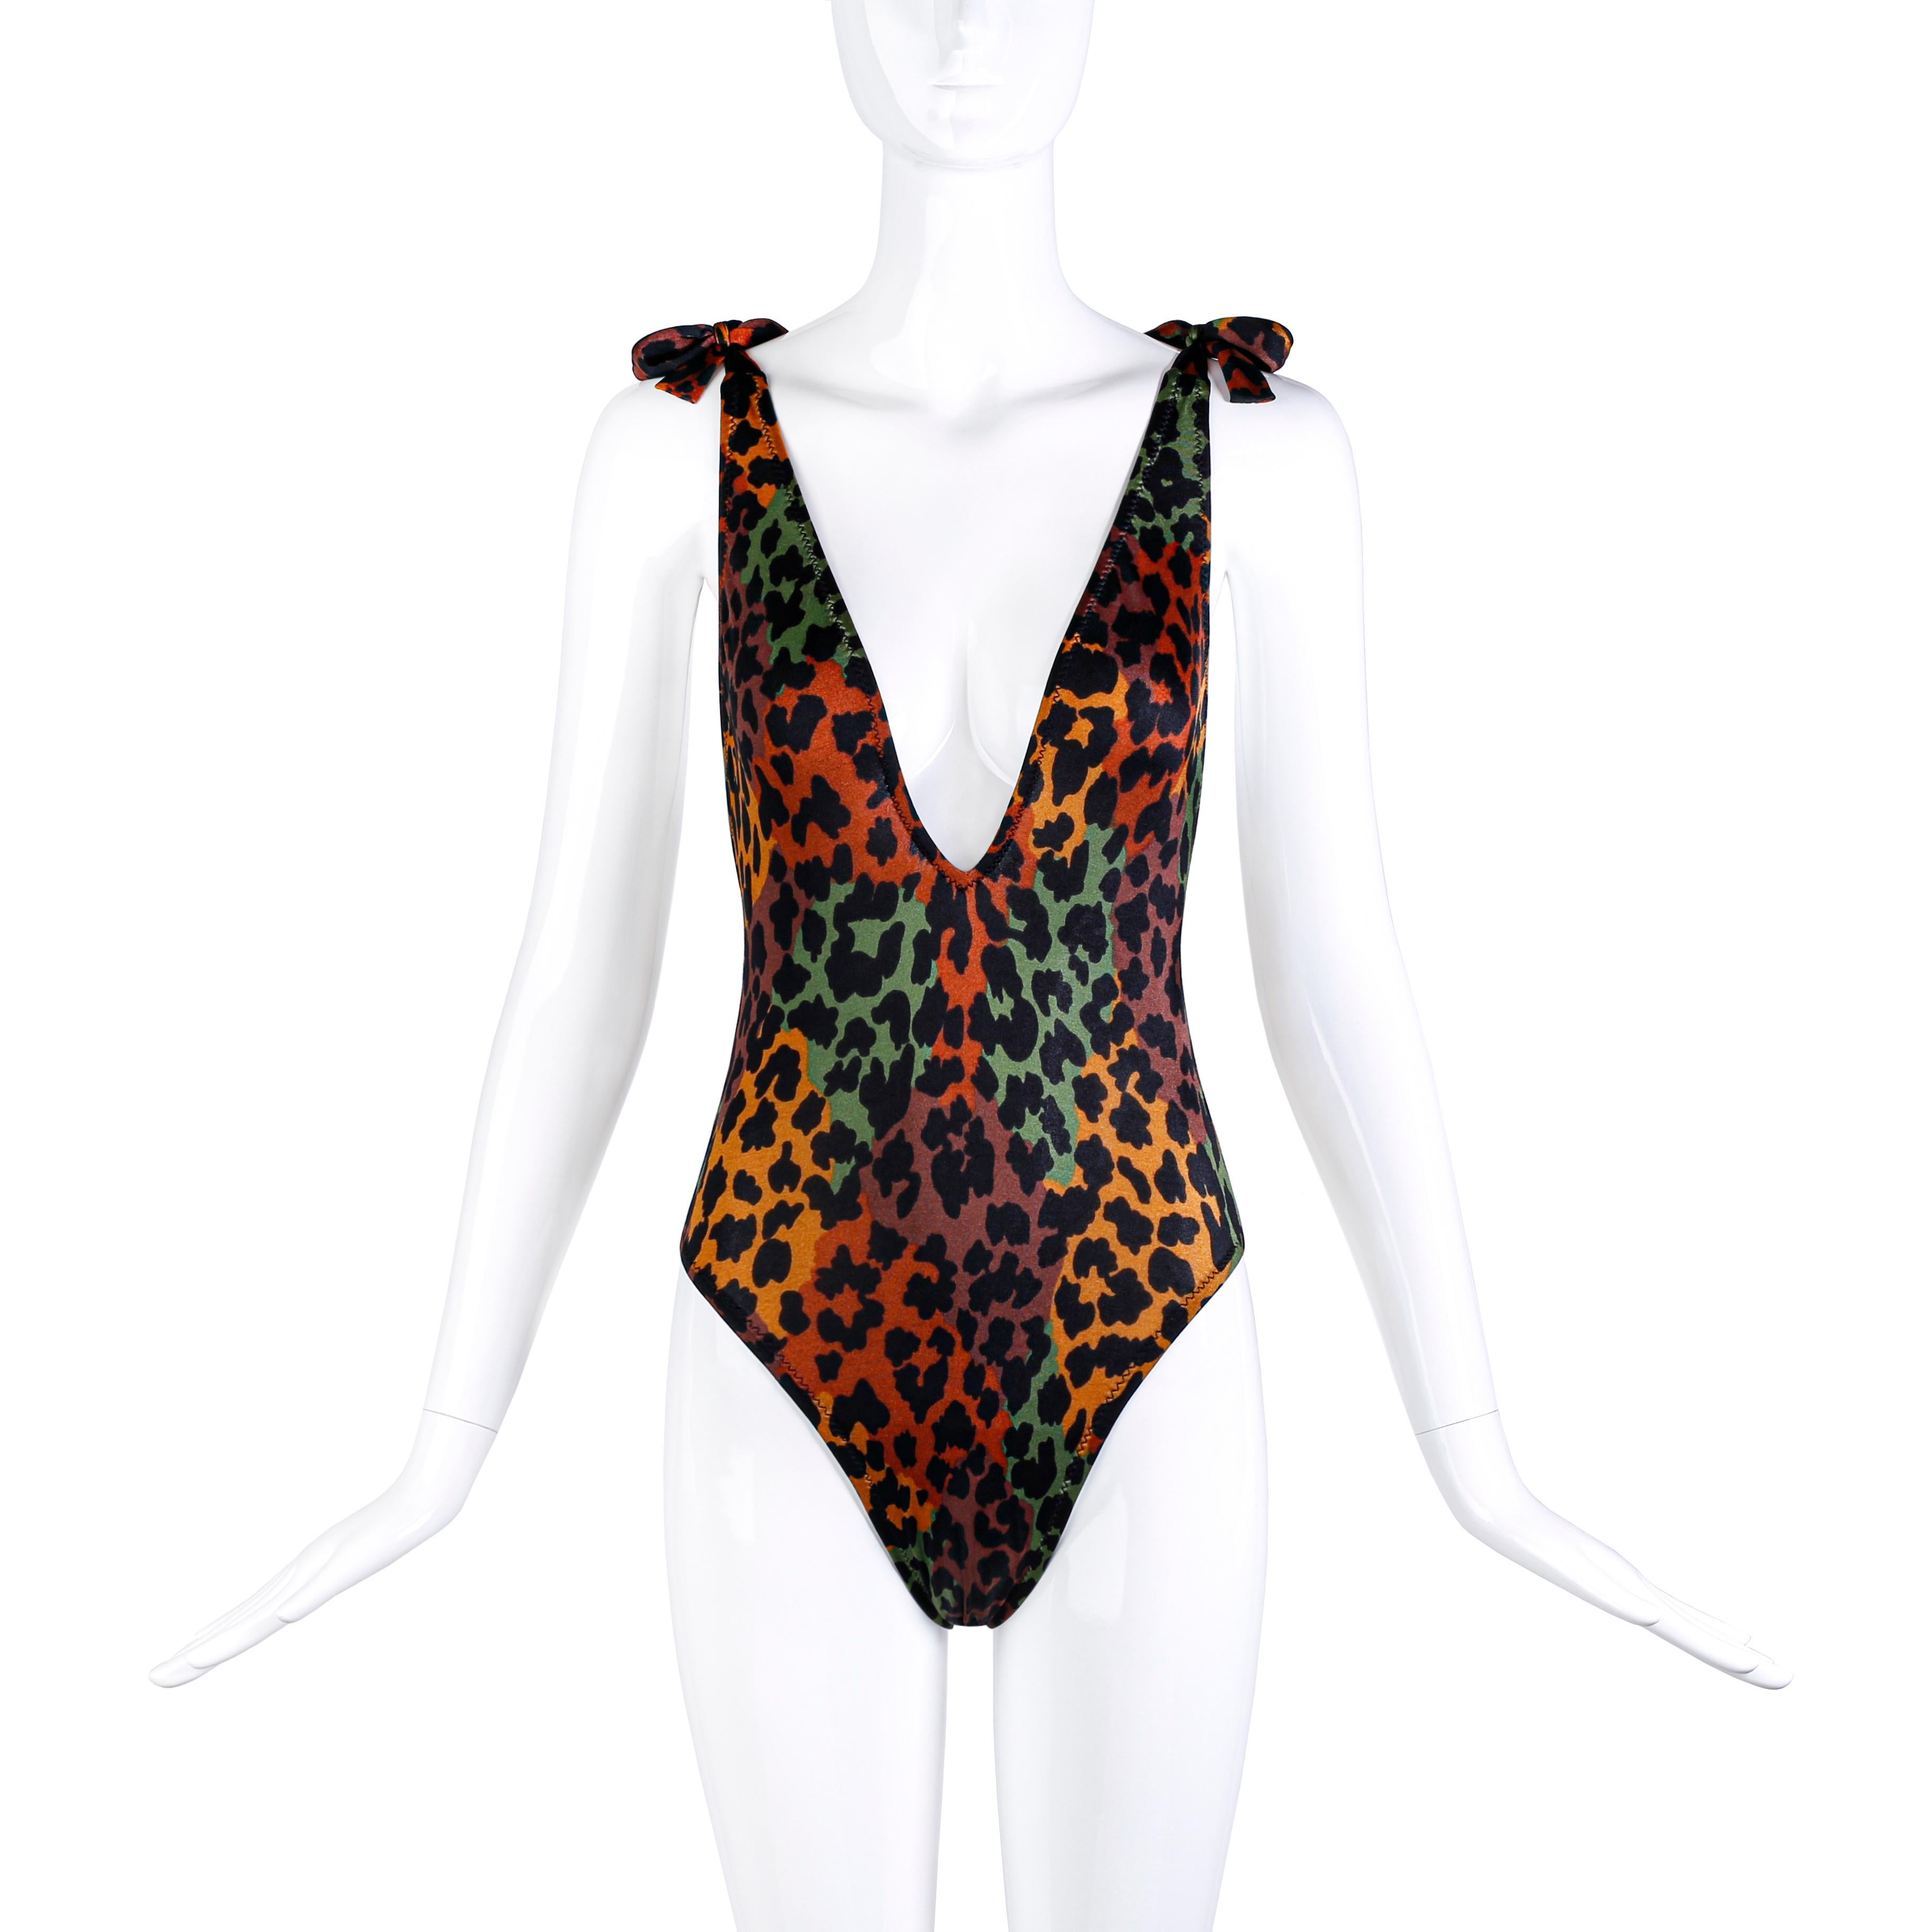 Vintage Yves Saint Laurent, maillot de bain body stretch imprimé léopard. Circa années 80. L'étiquette porte la mention 